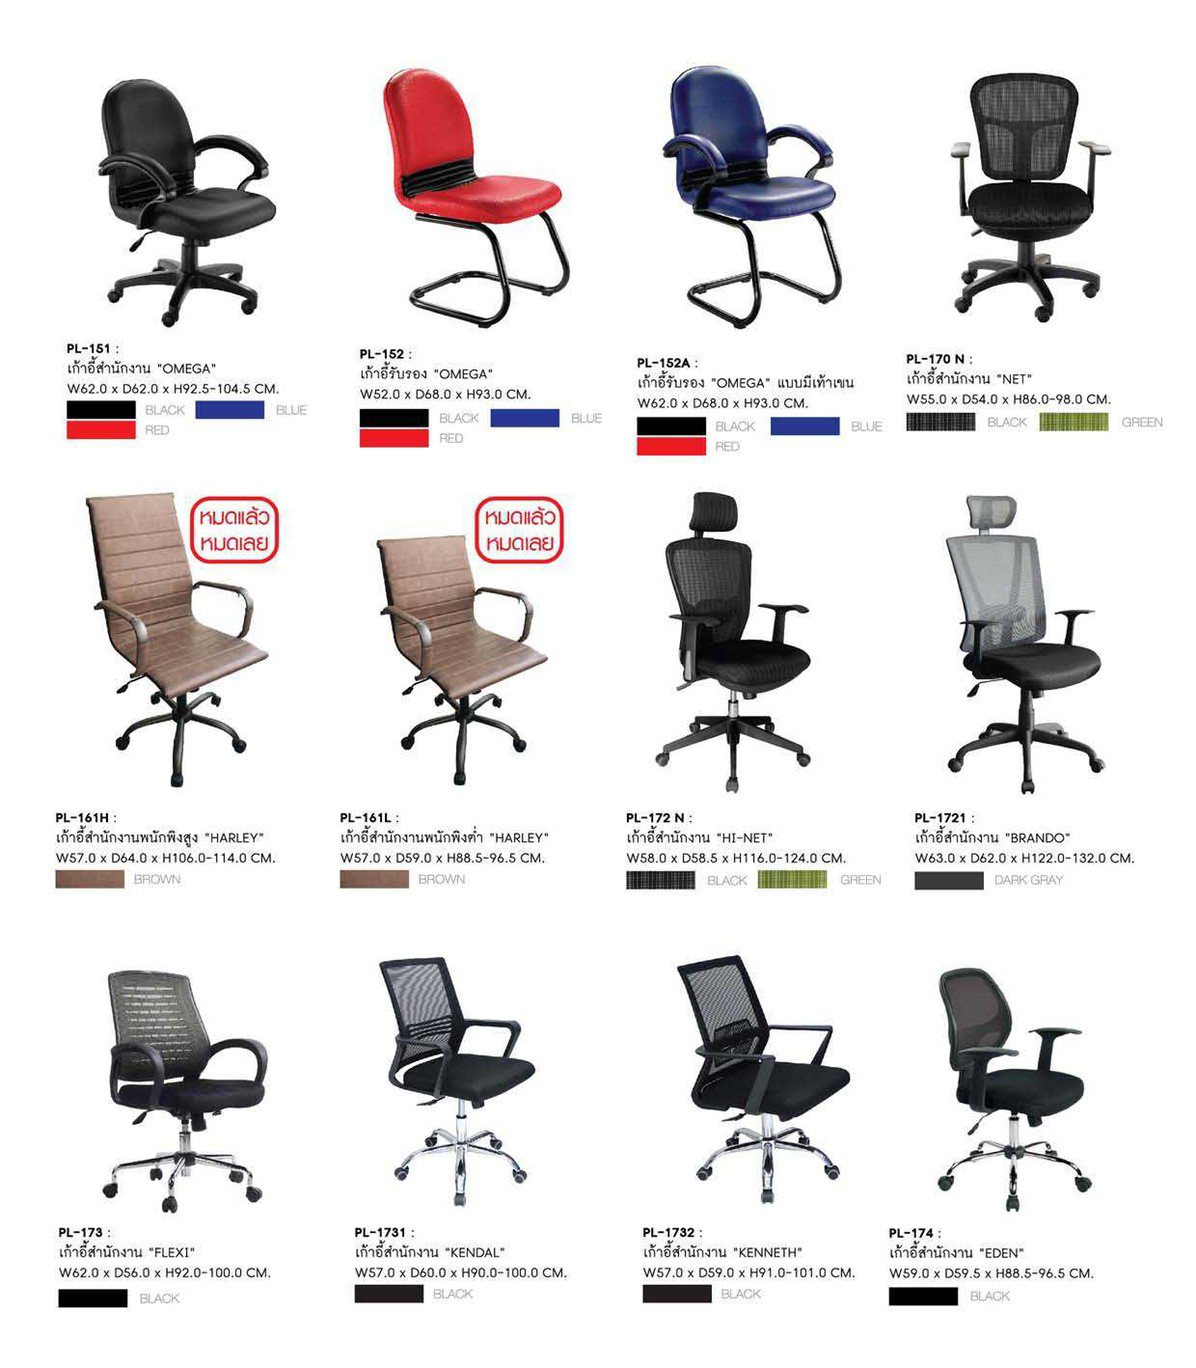 62082::PL-152A::เก้าอี้รับแขก OMEGA ก620xล680xส930 มม.  สี(ดำ,น้ำเงิน,แดง) มีท้าวแขน  เก้าอี้รับแขก SURE